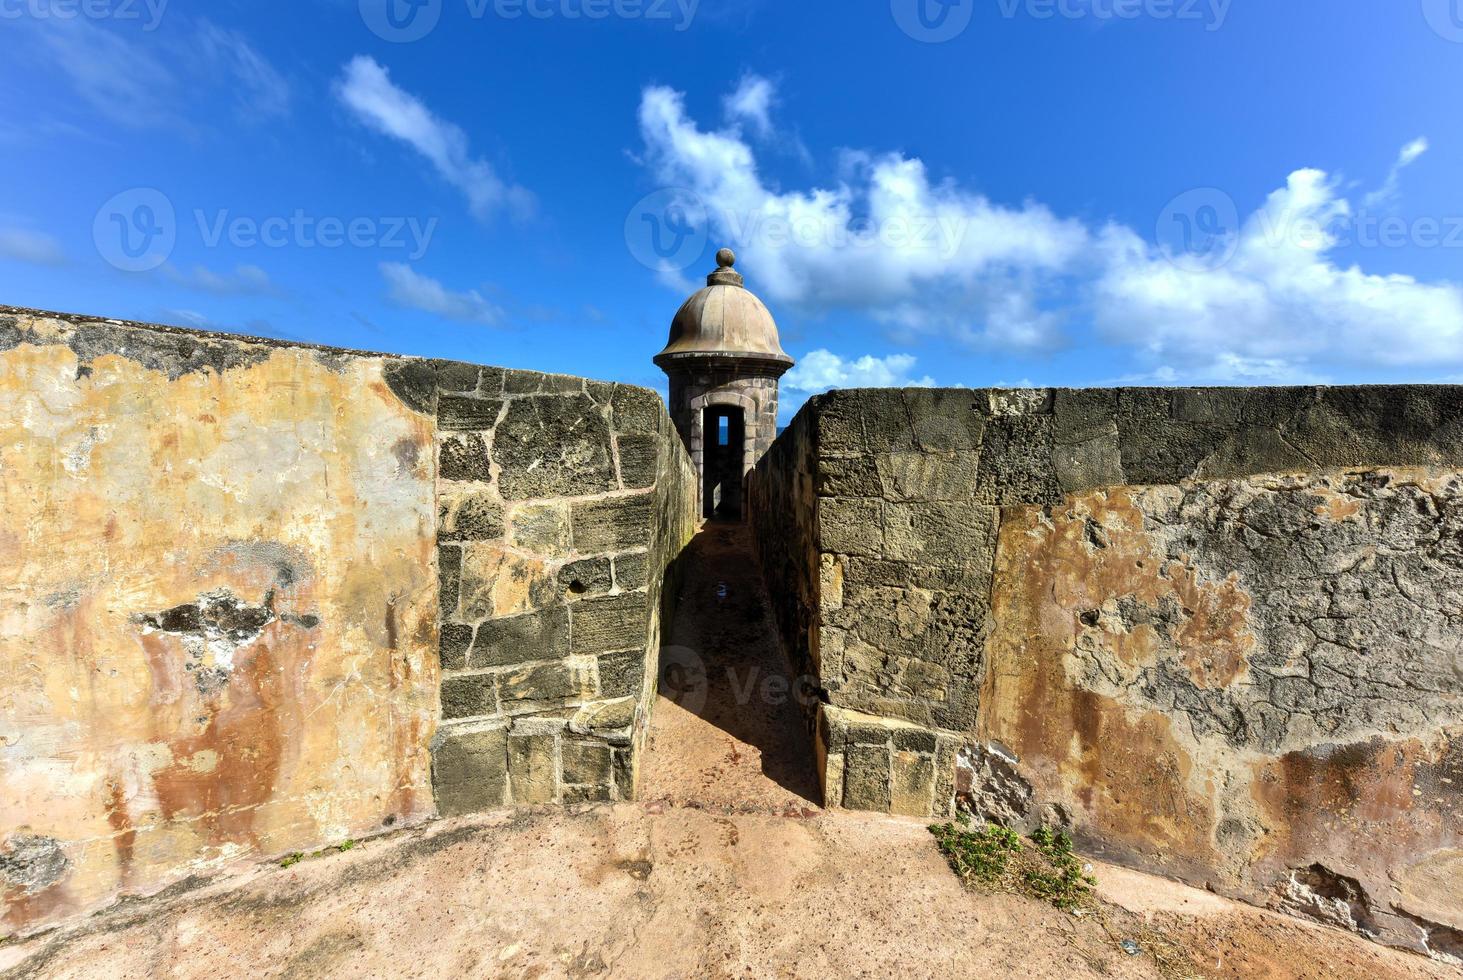 castillo san felipe del morro également connu sous le nom de fort san felipe del morro ou château de morro. c'est une citadelle du XVIe siècle située à san juan, porto rico. photo